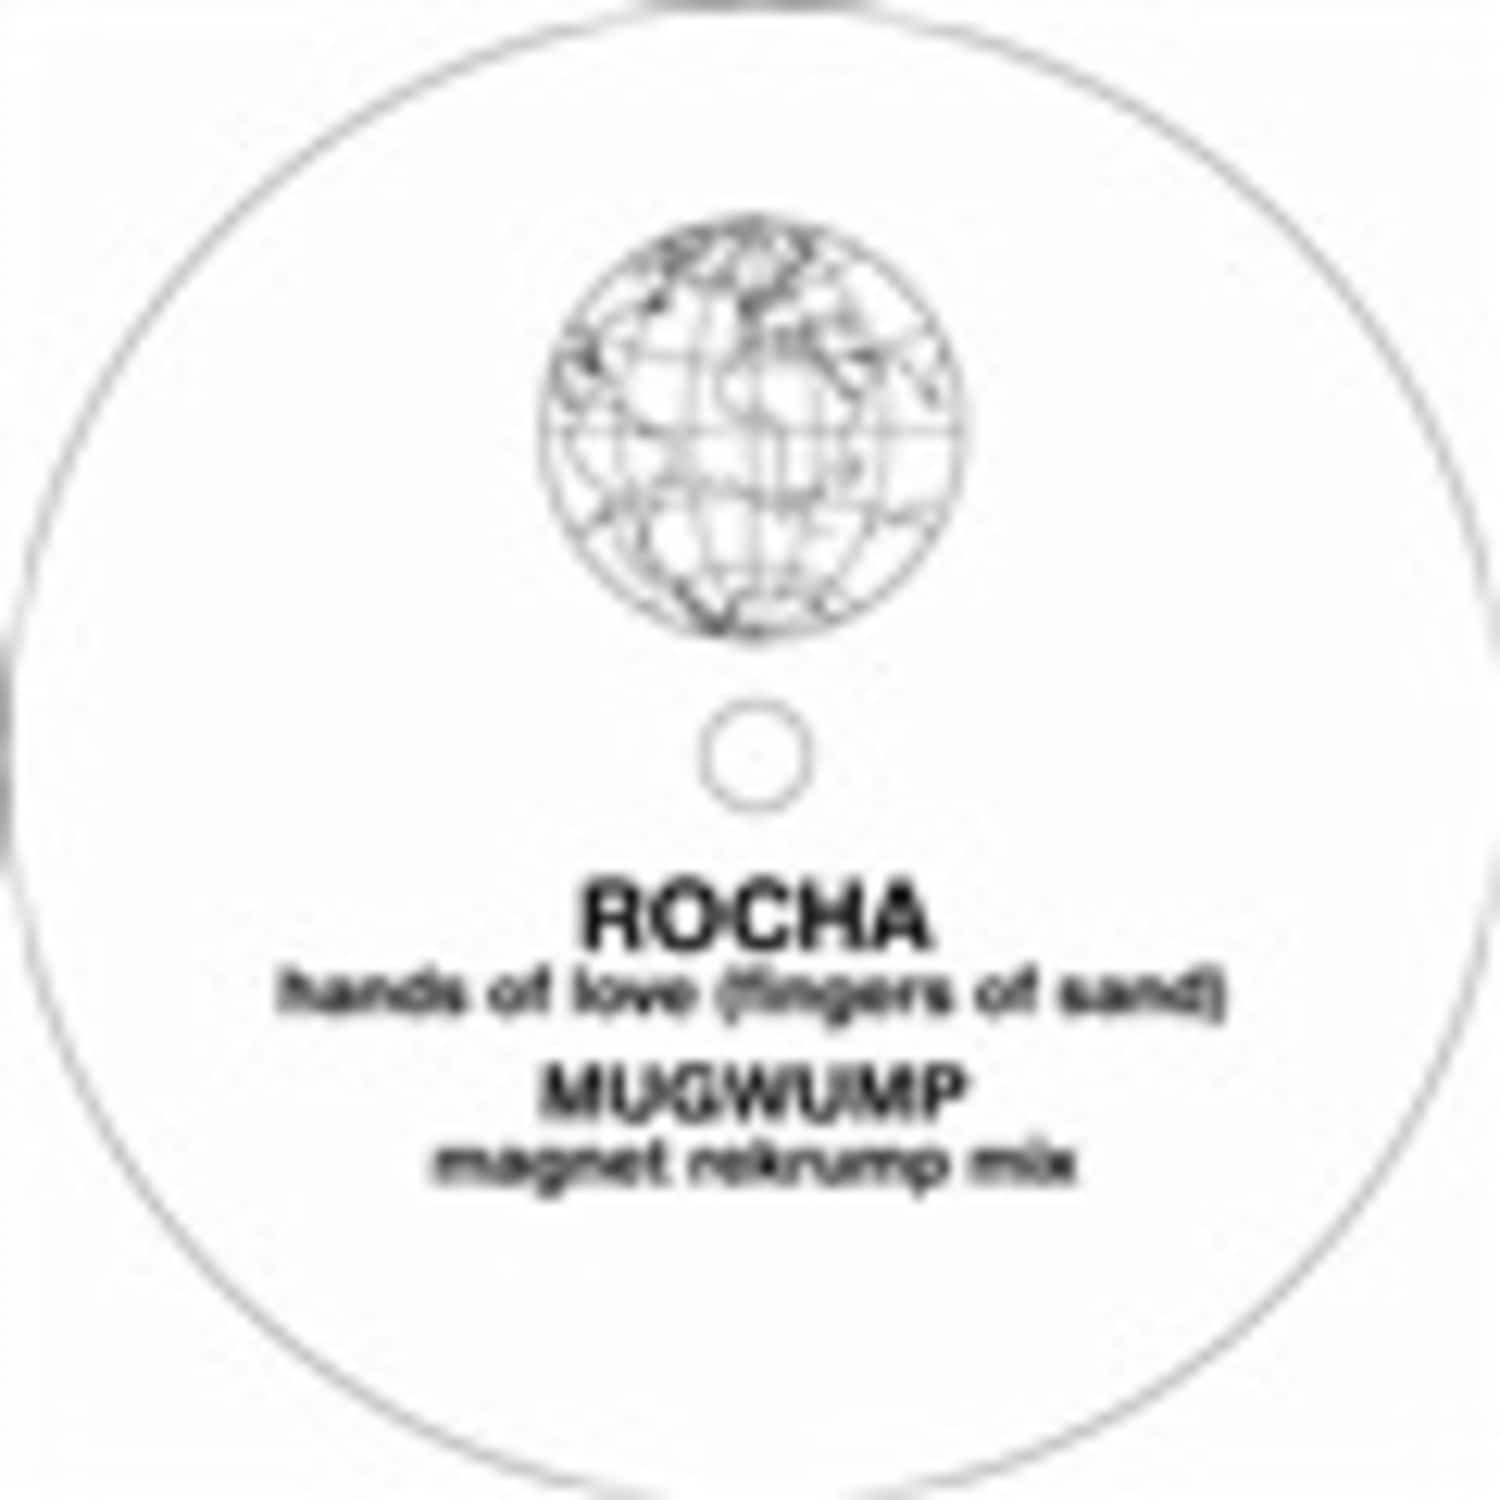 Rocha - HANDS OF LOVE 